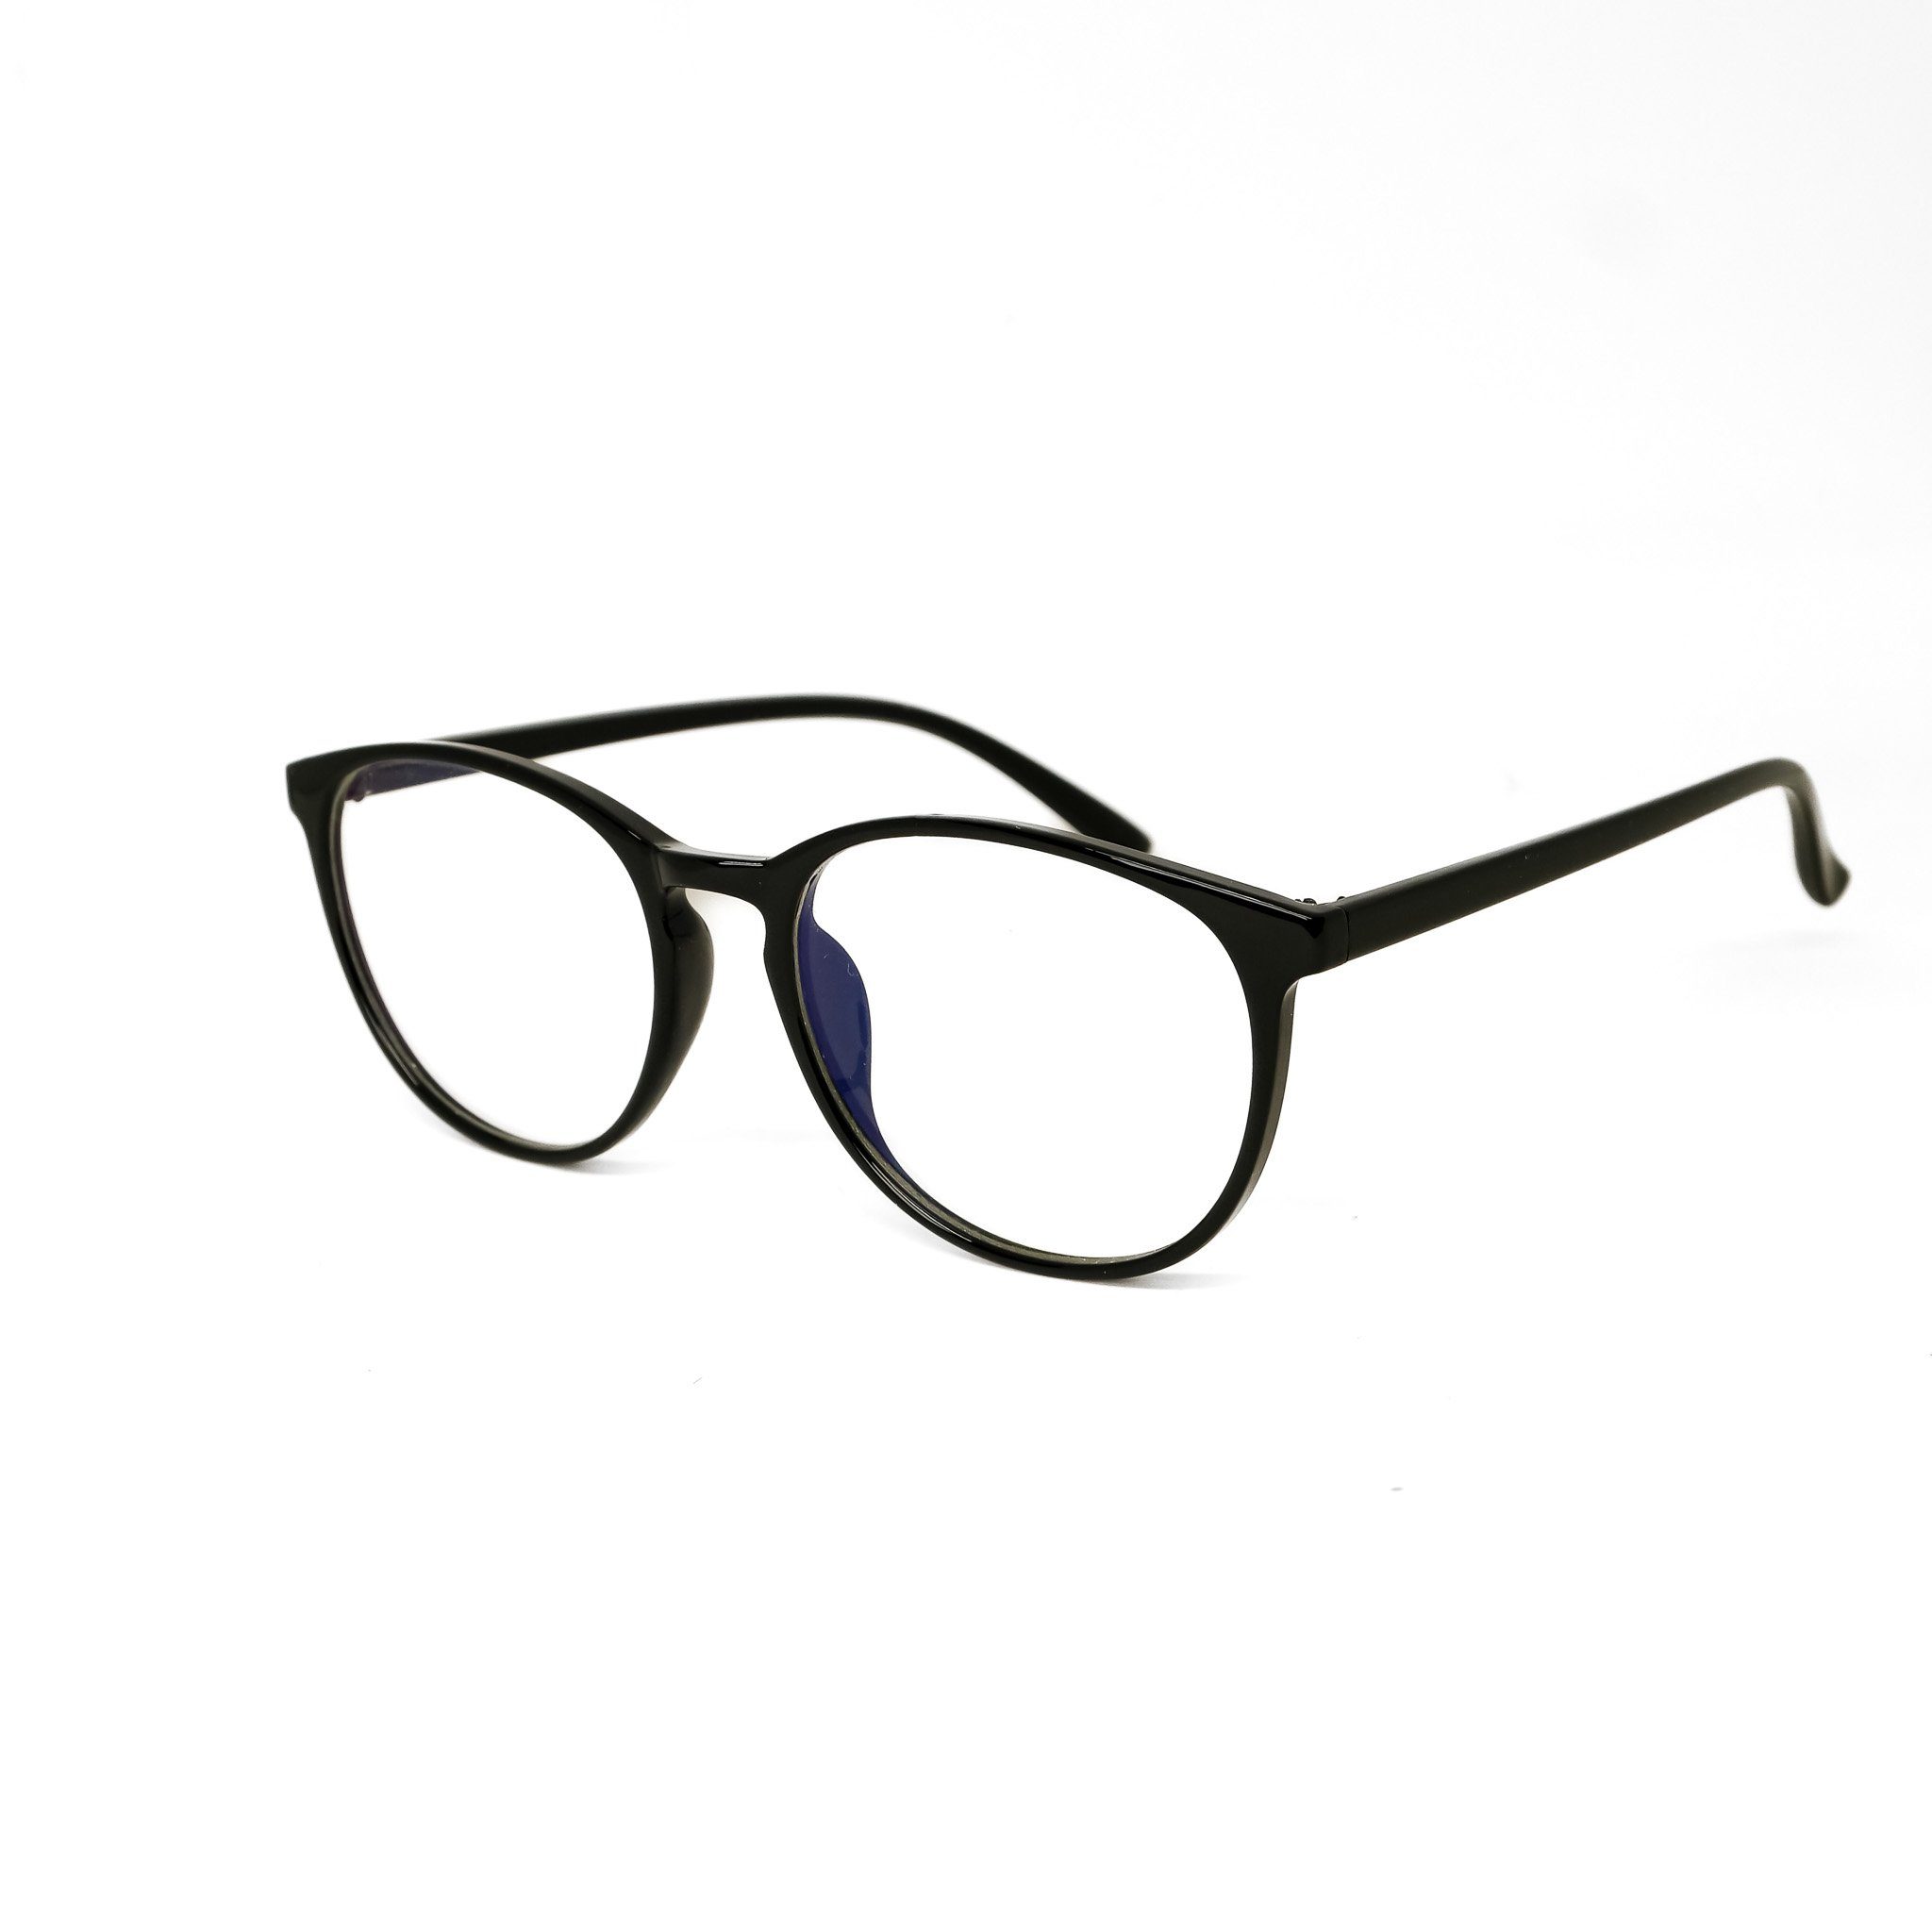 ohne Blaulicht Filter Brille Schutz Gaming Brille, Stärke salazar.plus Bildschirmbrille Sportbrille UV